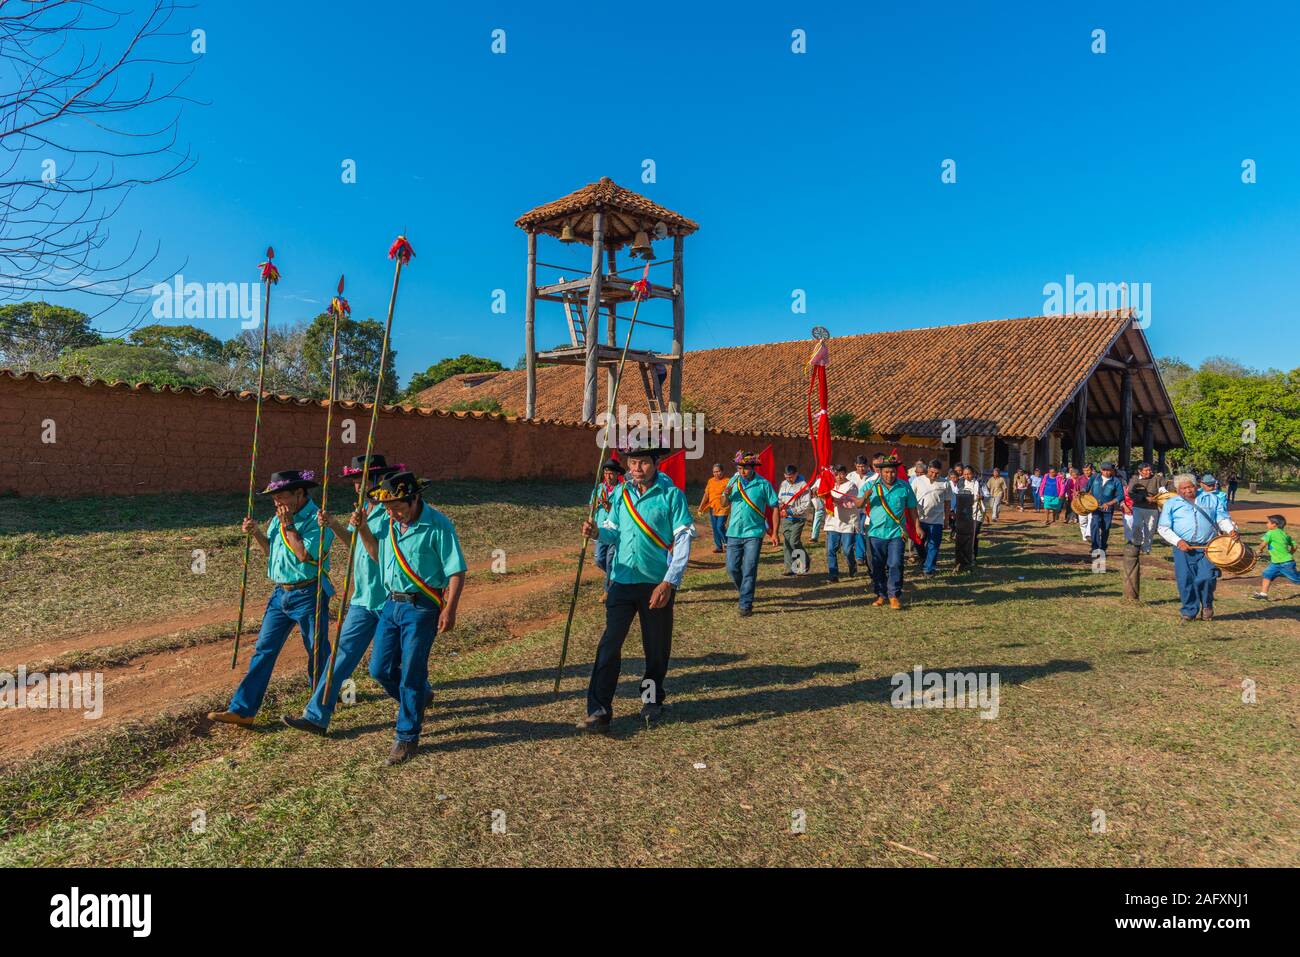 Feria ou procession religieuse à la mission jésuite Santa Ana, Circuit, Jésuite, de la Bolivie, des basses terres de l'Amérique latine Banque D'Images